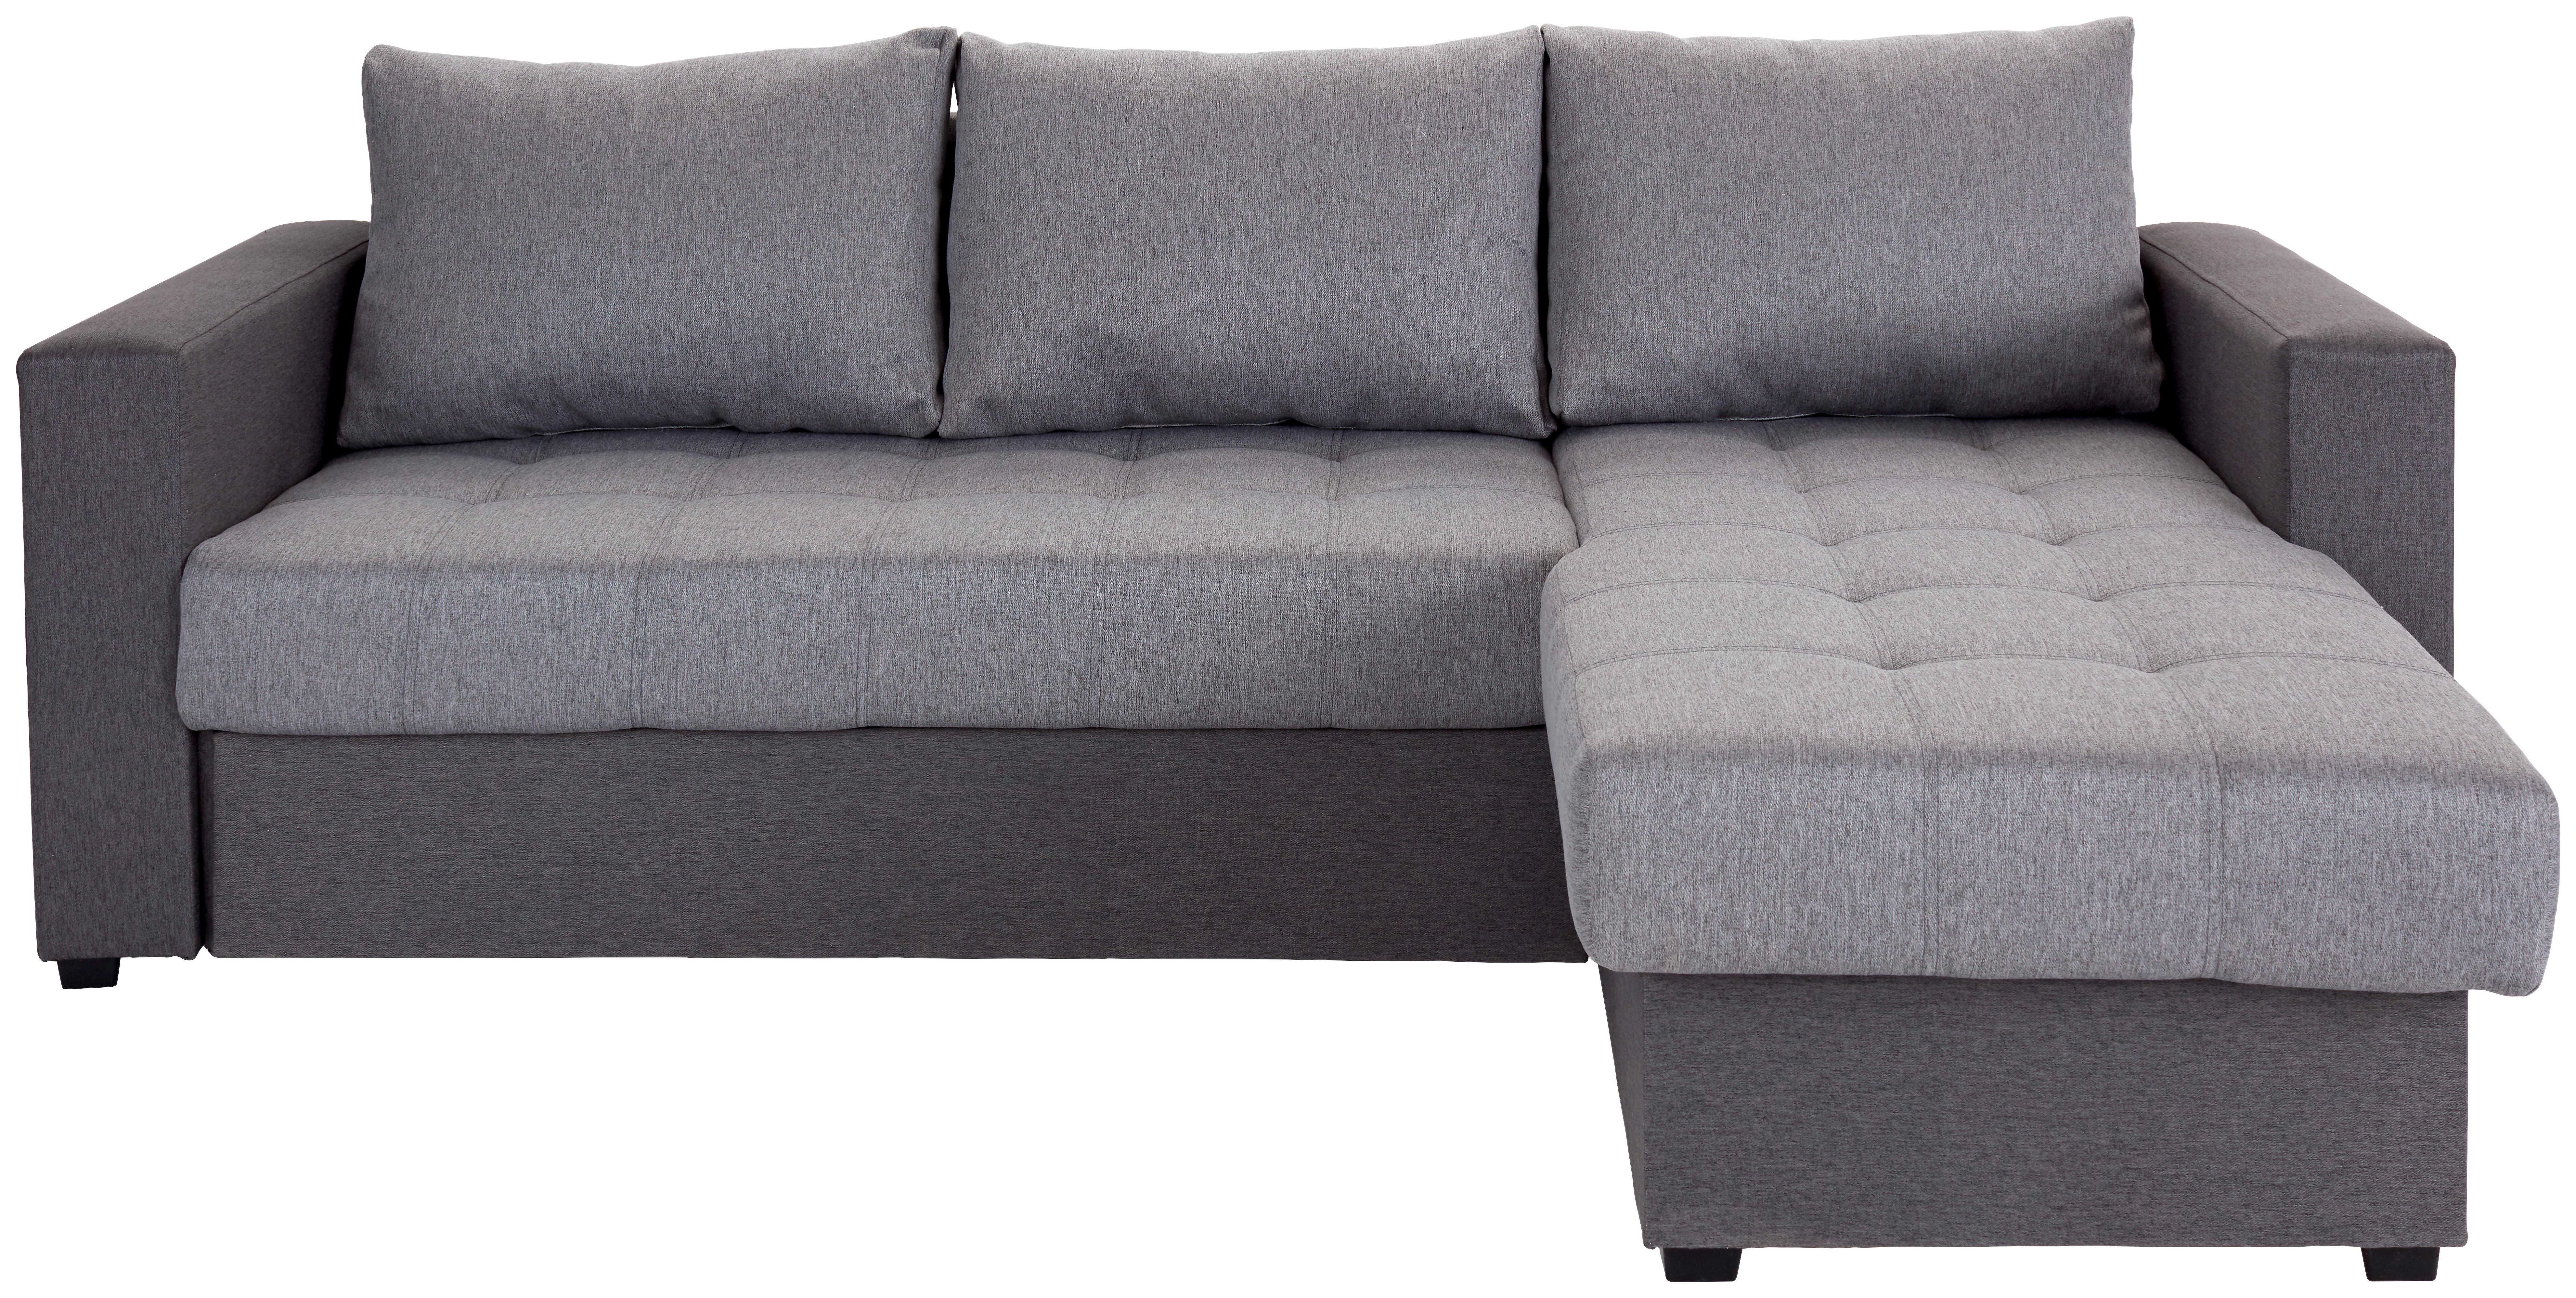 Sedežna Garnitura Atlanta, Z Ležiščem - črna/antracit, Moderno, tekstil (230/160cm) - Modern Living